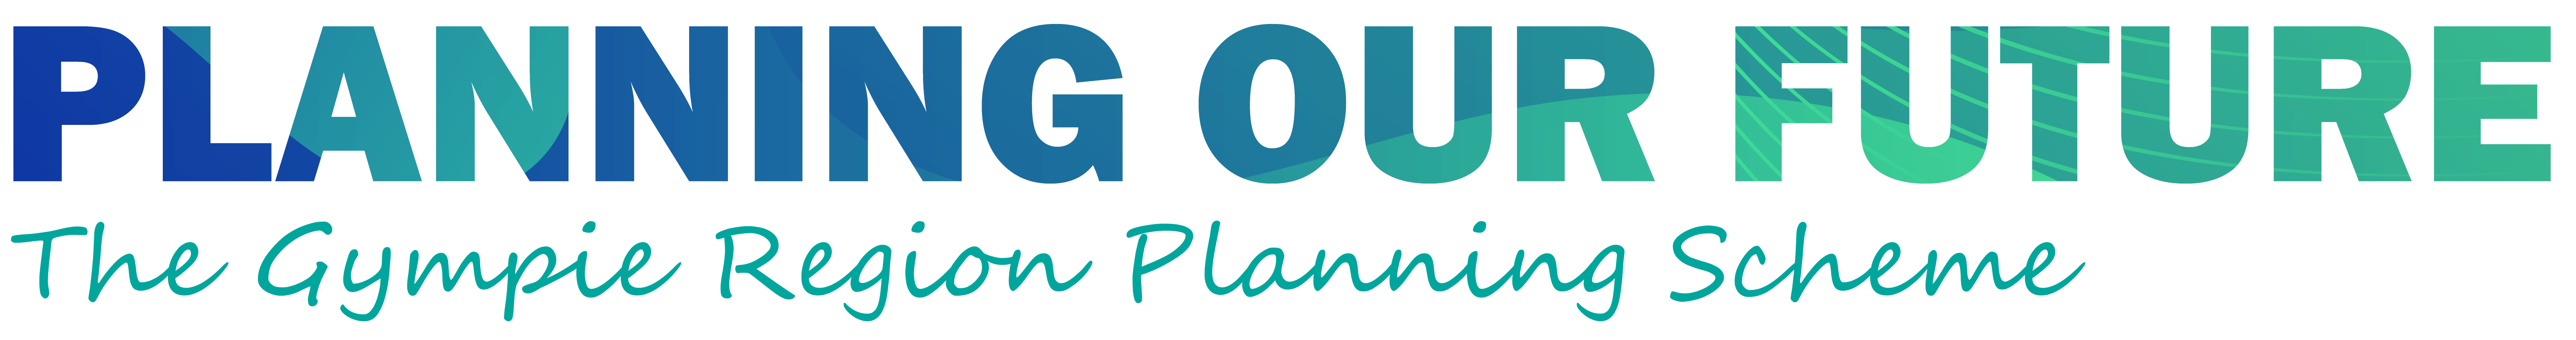 Planning scheme 2023 logo 01